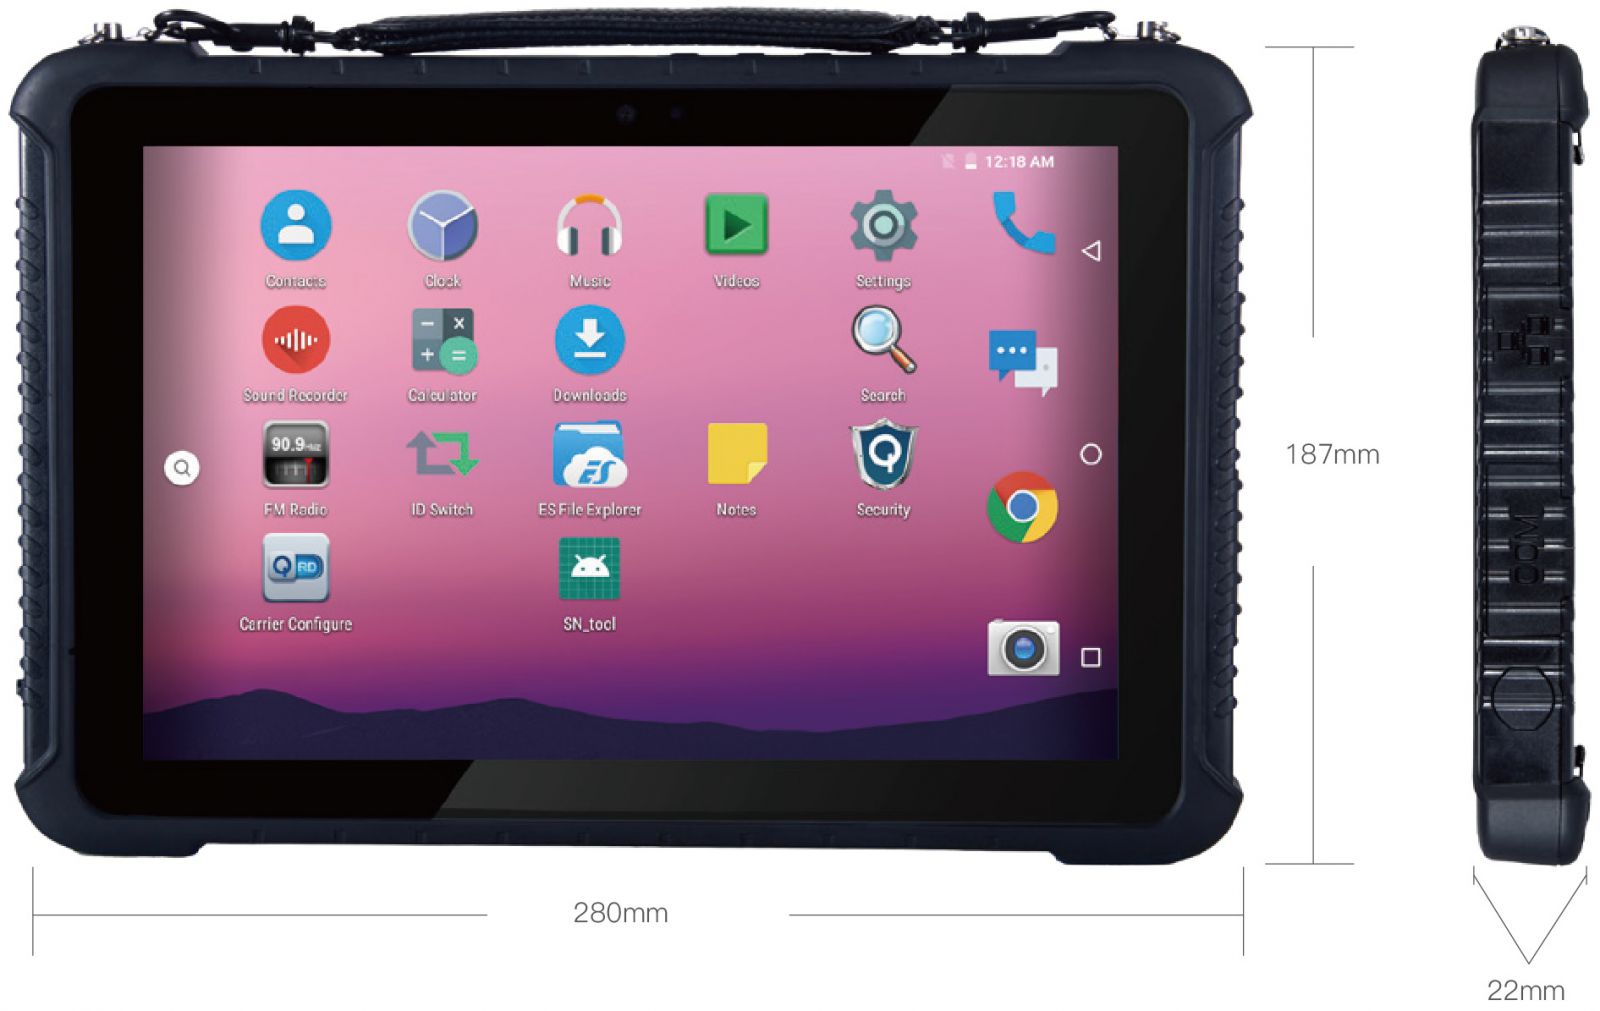 Emdoor Q16 v.5 - wodoodporny tablet przemysowy z pamici 4GB RAM, dyskiem 64GB, NFC, AR Film oraz skanerem kodw 1D Honeywell